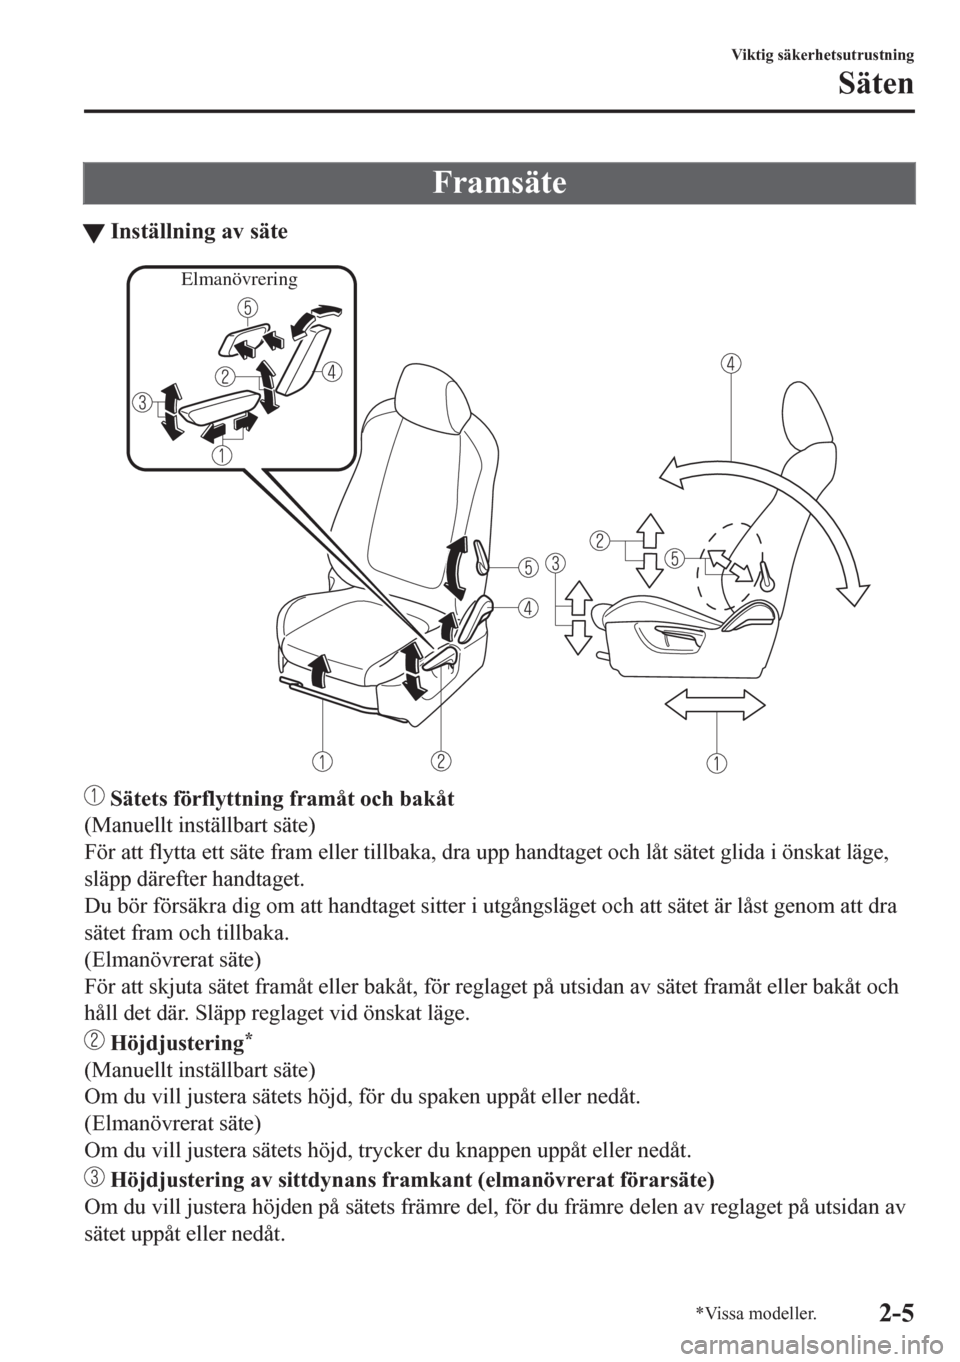 MAZDA MODEL CX-5 2018  Ägarmanual (in Swedish) Framsäte
tInställning av säte
Elmanövrering
 Sätets förflyttning framåt och bakåt
(Manuellt inställbart säte)
För att flytta ett säte fram eller tillbaka, dra upp handtaget och låt sätet